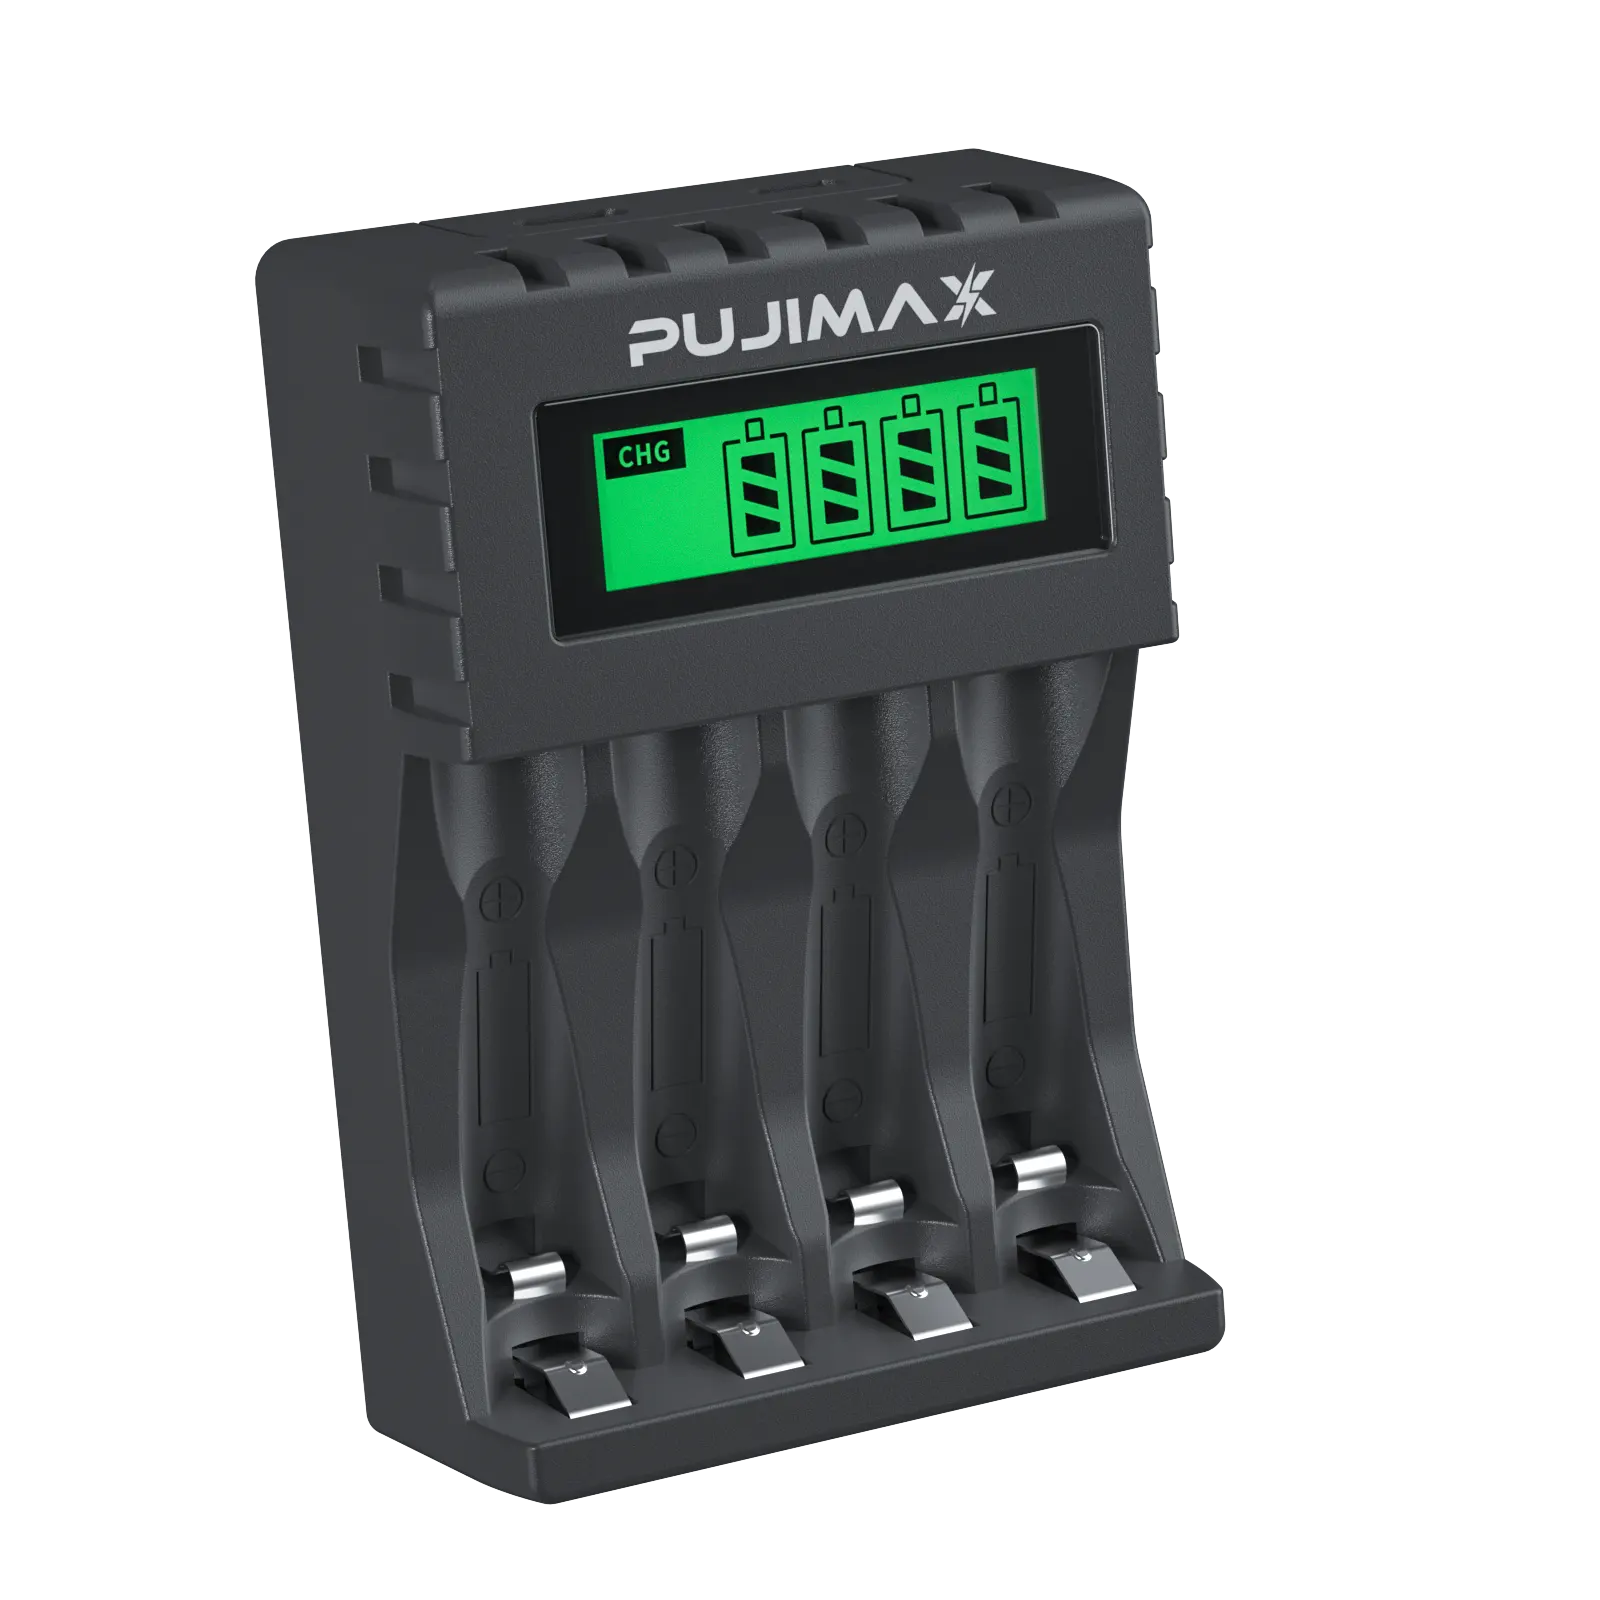 Pujimax carregador de bateria recarregável, portátil, aaa aa, 1.2v, controle remoto, ventilador para crianças, brinquedos, carregadores de baterias